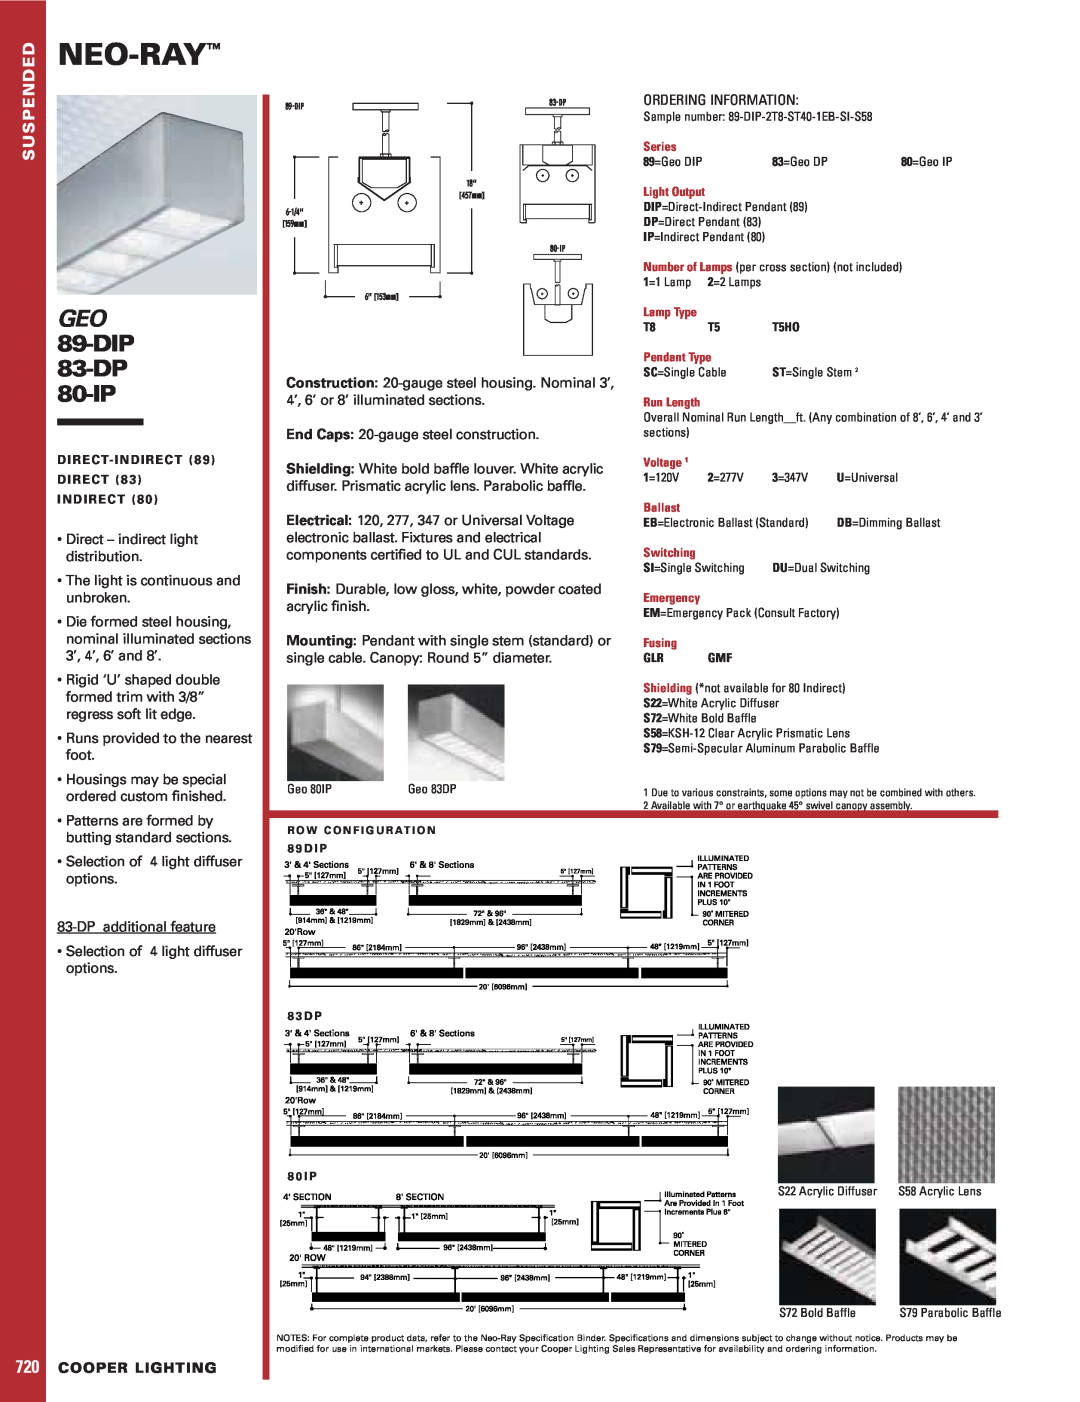 Cooper Lighting specifications Neo-Ray, GEO 89-DIP 83-DP, 80-IP, Cooper Lighting 